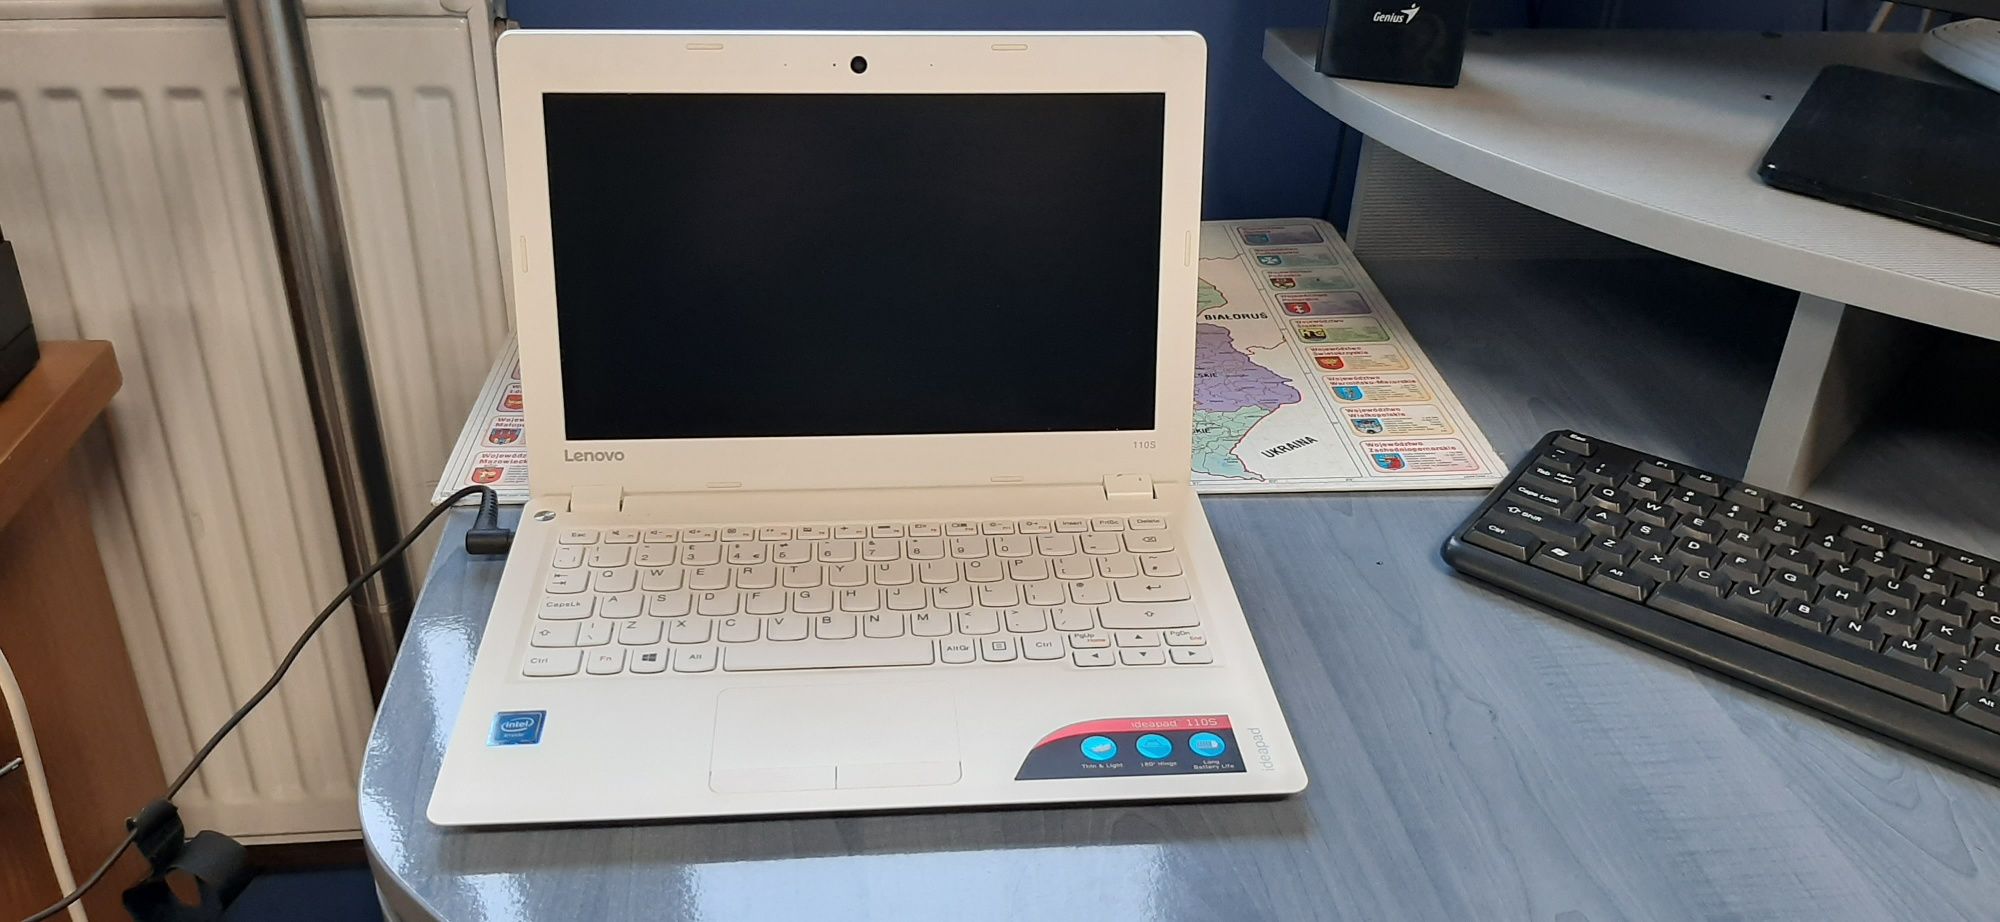 Laptom Lenovo ideapad 110S-11IBR